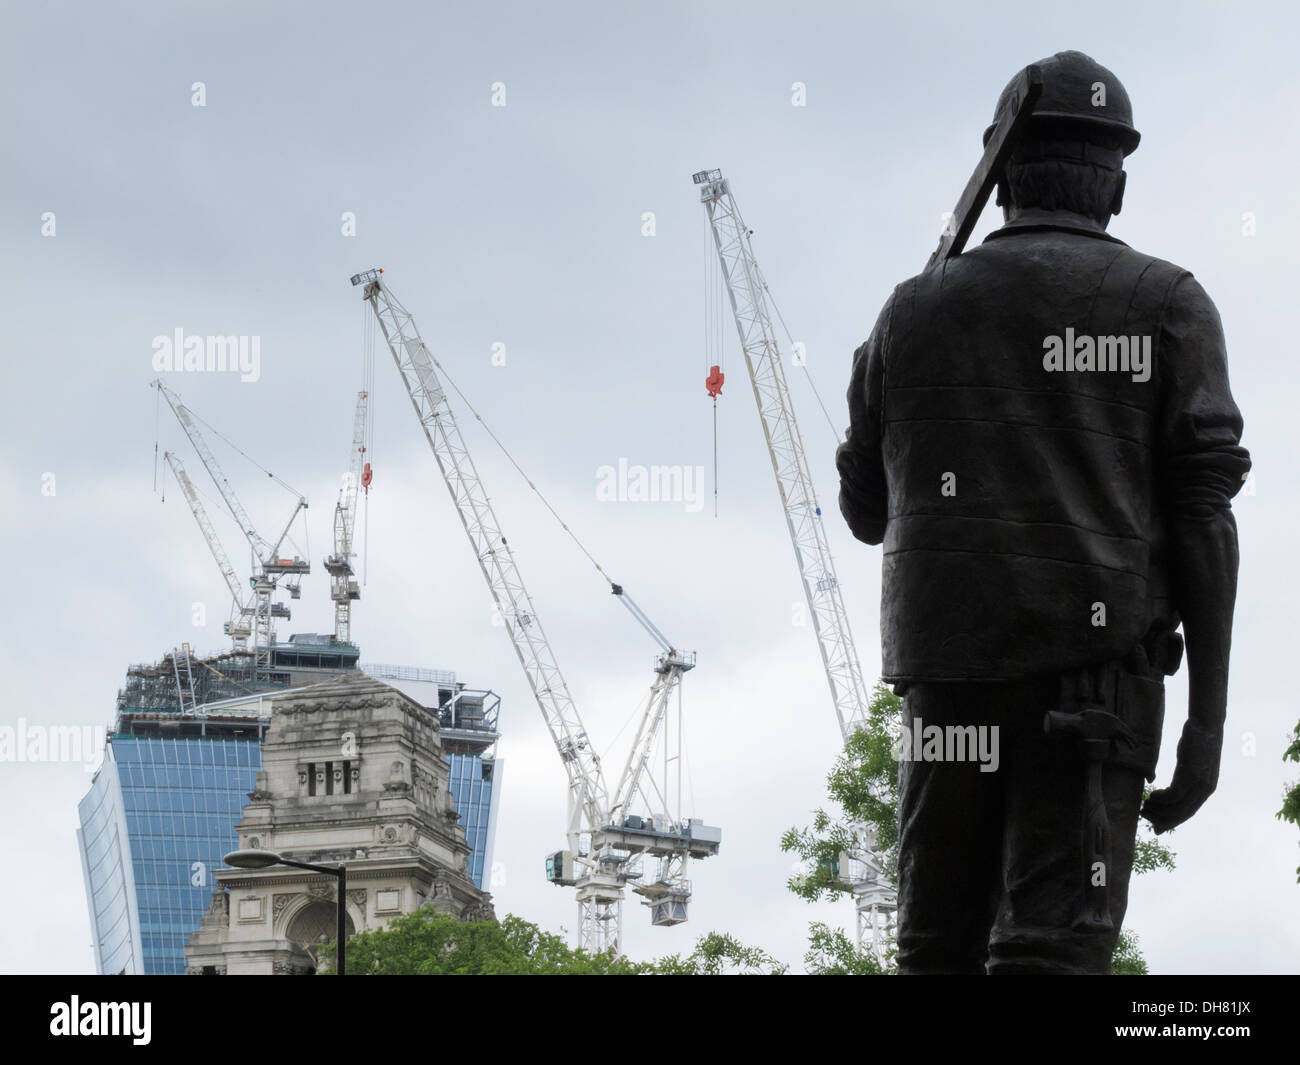 Monumento al trabajador de la construcción de Tower Hill Londres Inglaterra (obreros de la construcción muertos en accidentes en sitios de construcción en el Reino Unido) Foto de stock